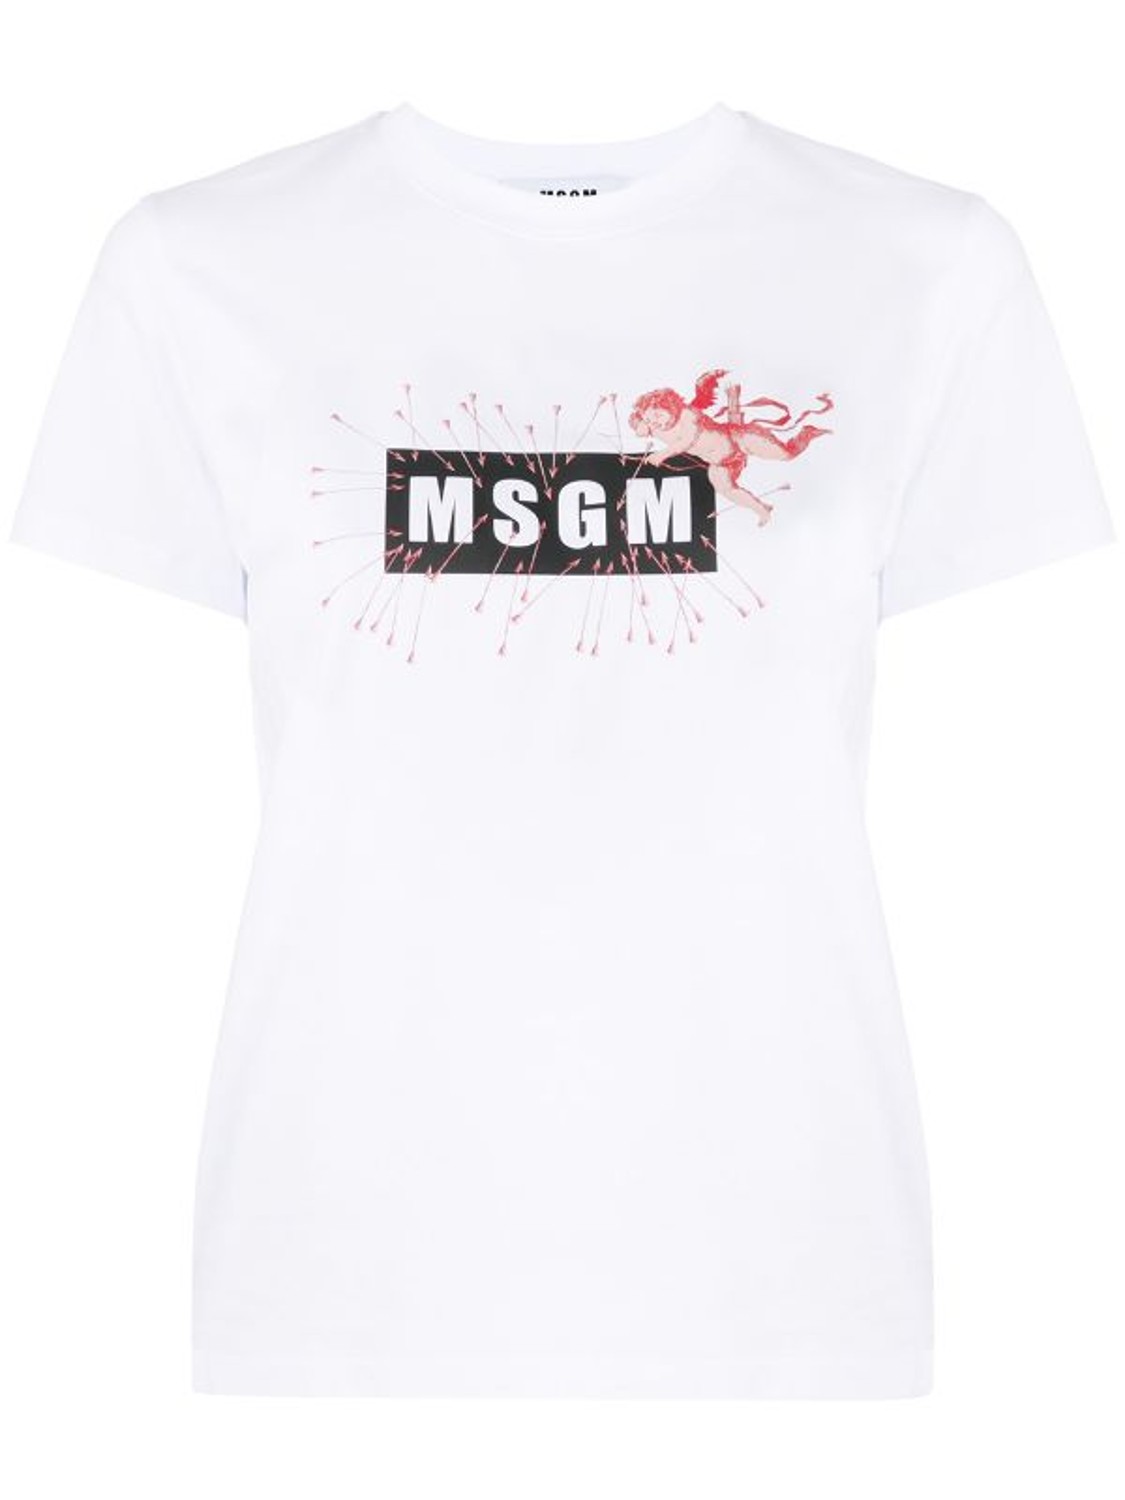 shop MSGM Saldi T-shirts: T-shirts MSGM, fit regolare, manica corta, girocollo, scritta sul davanti.

Composizione: 100% cotone. number 1911